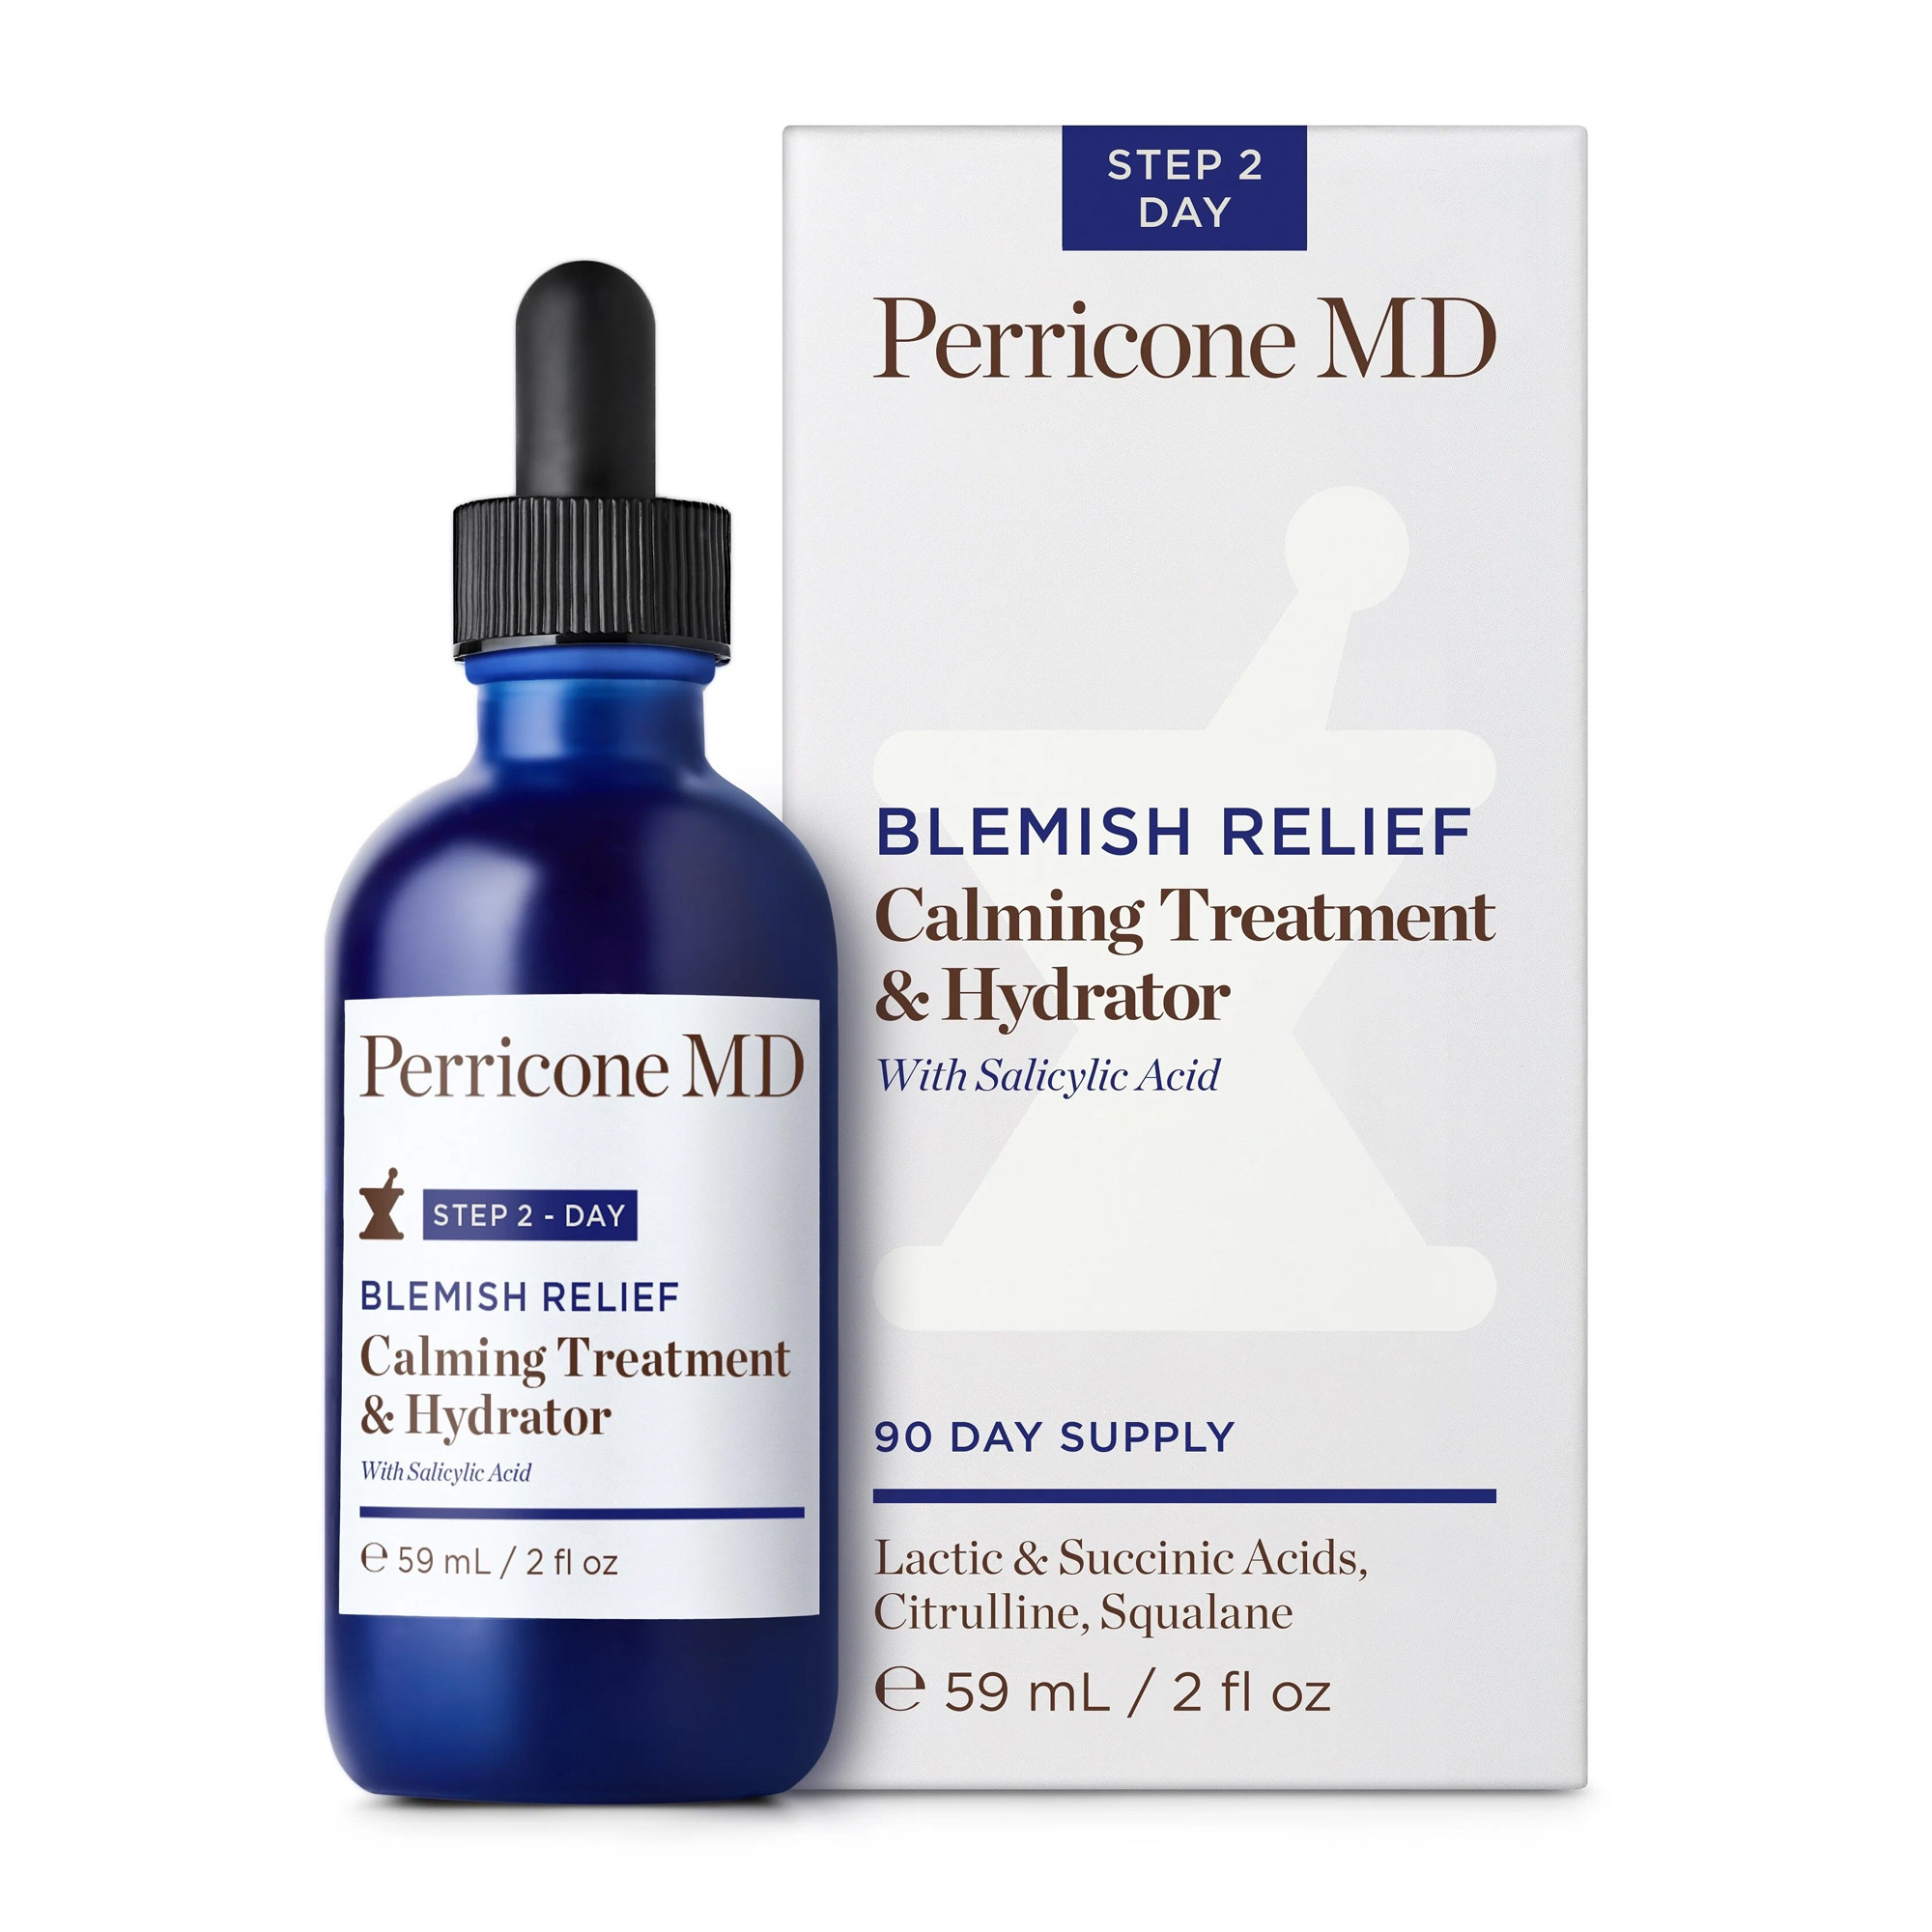 Perricone MD Blemish Relief Calming Treatment And Hydrator - Дневной успокаивающий увлажняющий крем для проблемной кожи